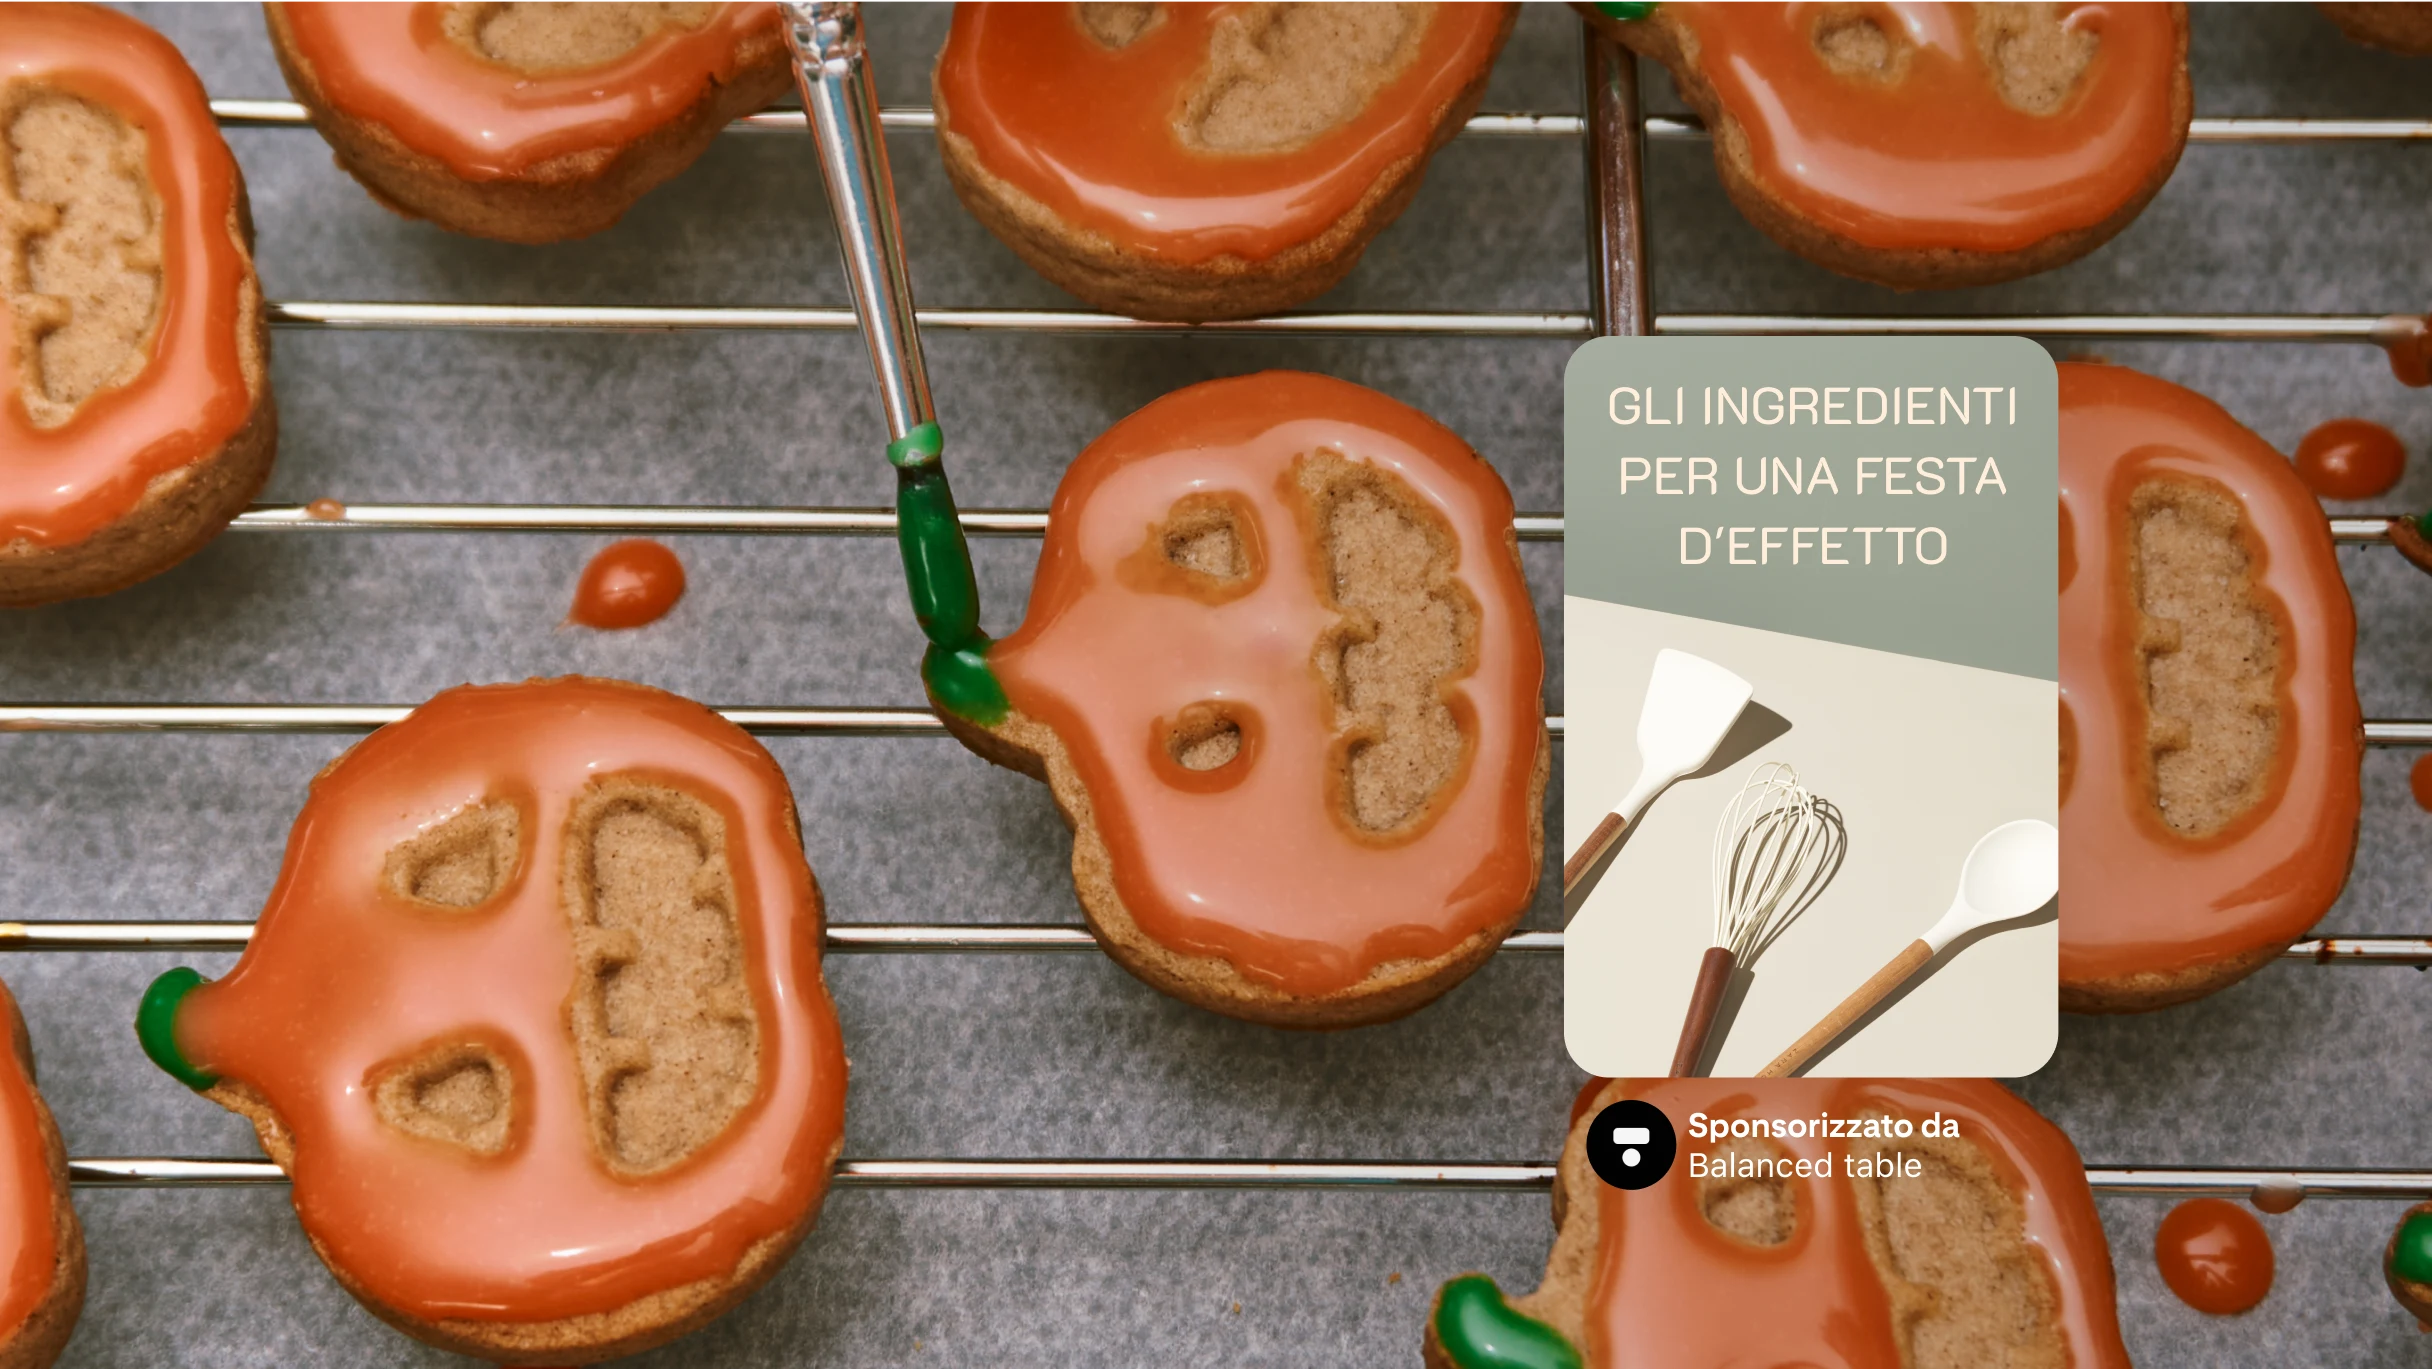 Immagine a larghezza massima di un vassoio di biscotti decorati a forma di zucca con un Pin sulla destra raffigurante una frusta e la scritta "Prepara qualcosa di speciale".